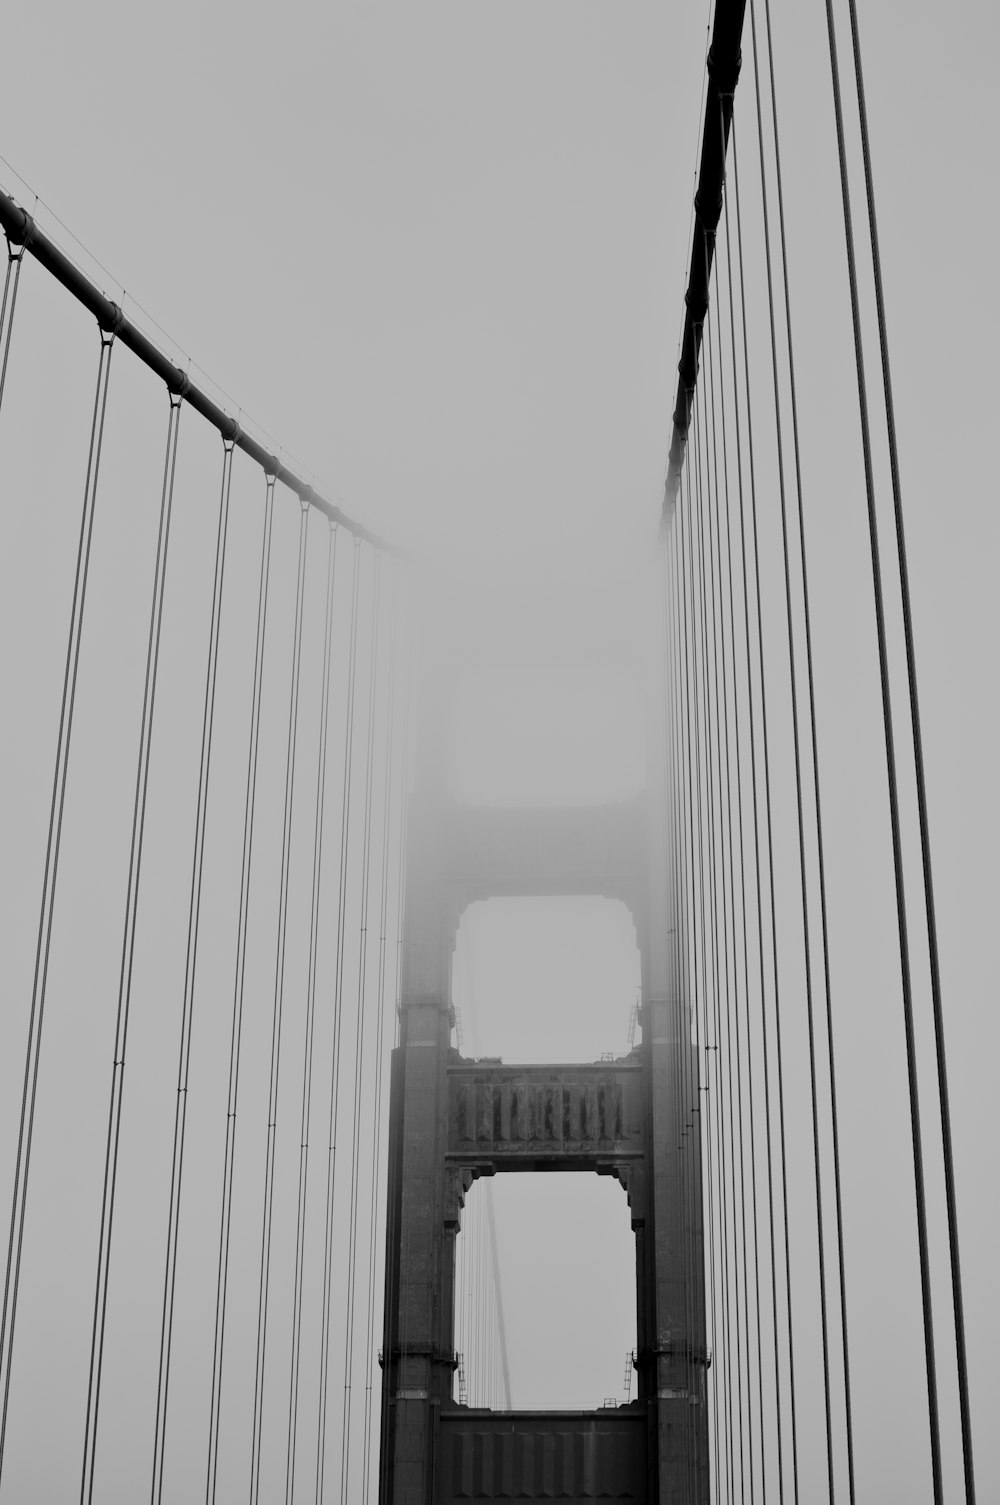 Fotografía en escala de grises del puente Golden Gate